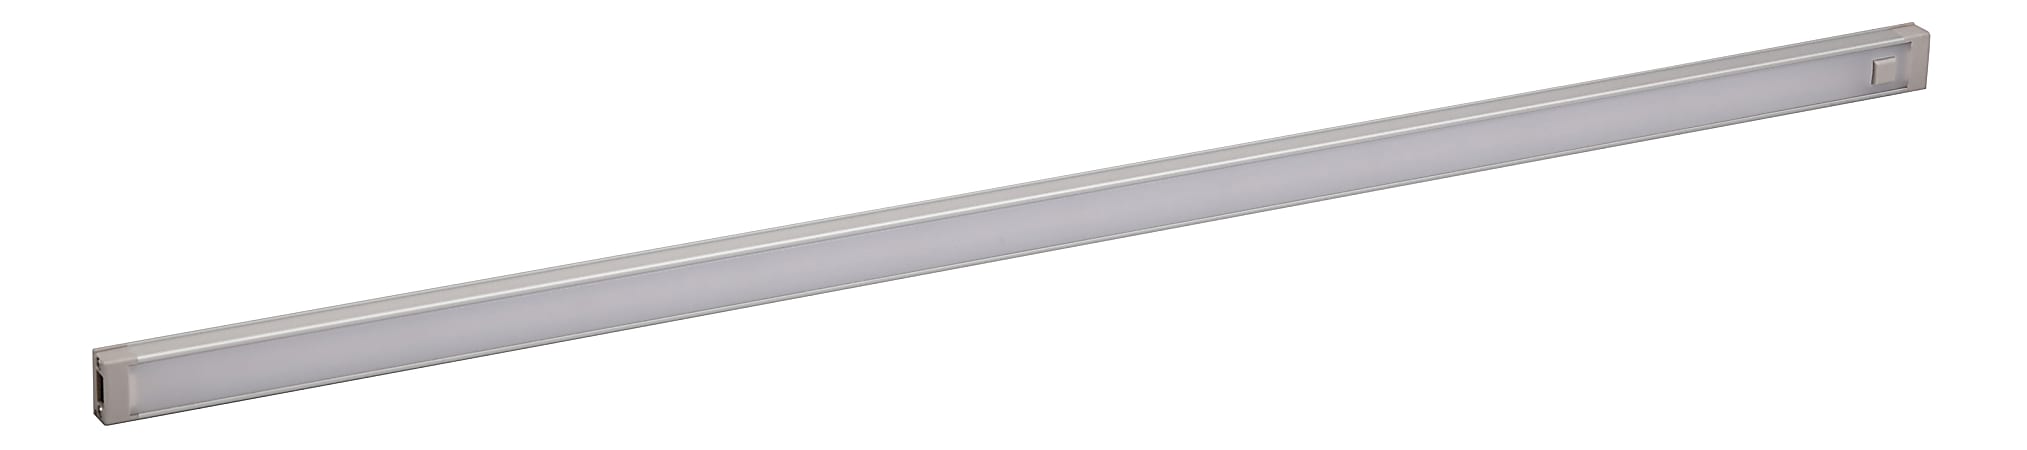 Black+Decker 1-Bar Under-Cabinet LED Lighting Kit, 24", Warm White